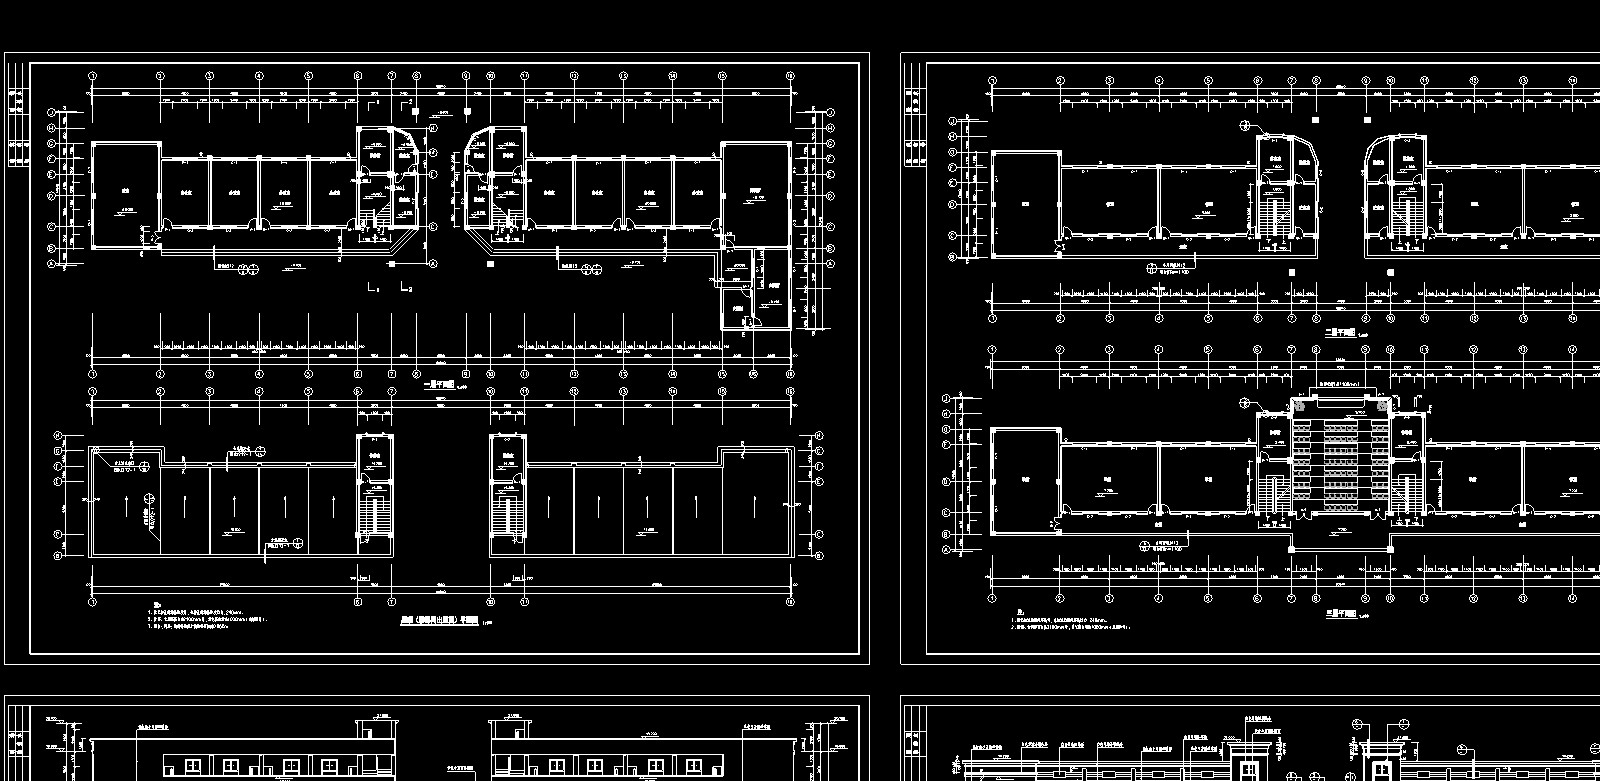 【5层】3294.6平米五层框架综合教学楼工程量计算及施工组织（含建筑结构图、平面图、进度图、网络图）